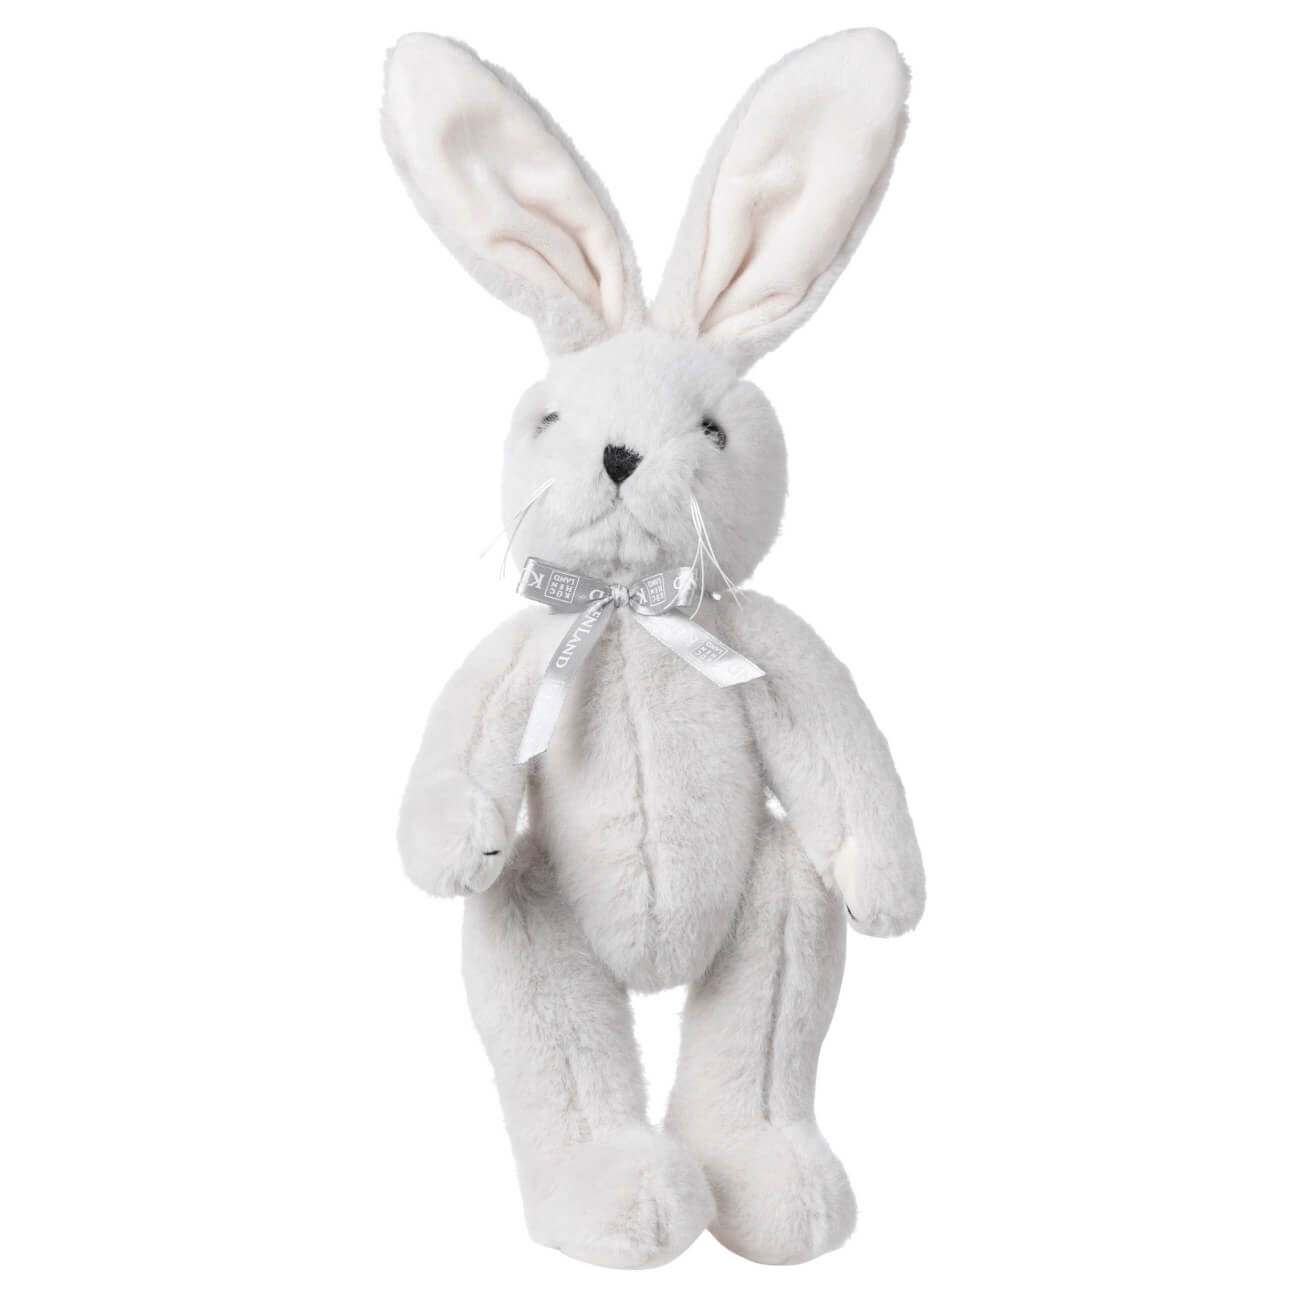 Игрушка, 30 см, мягкая, с подвижными лапами, полиэстер, светло-серая, Кролик, Rabbit toy мягкая игрушка ли ли в бирюзовом свитере 24 см